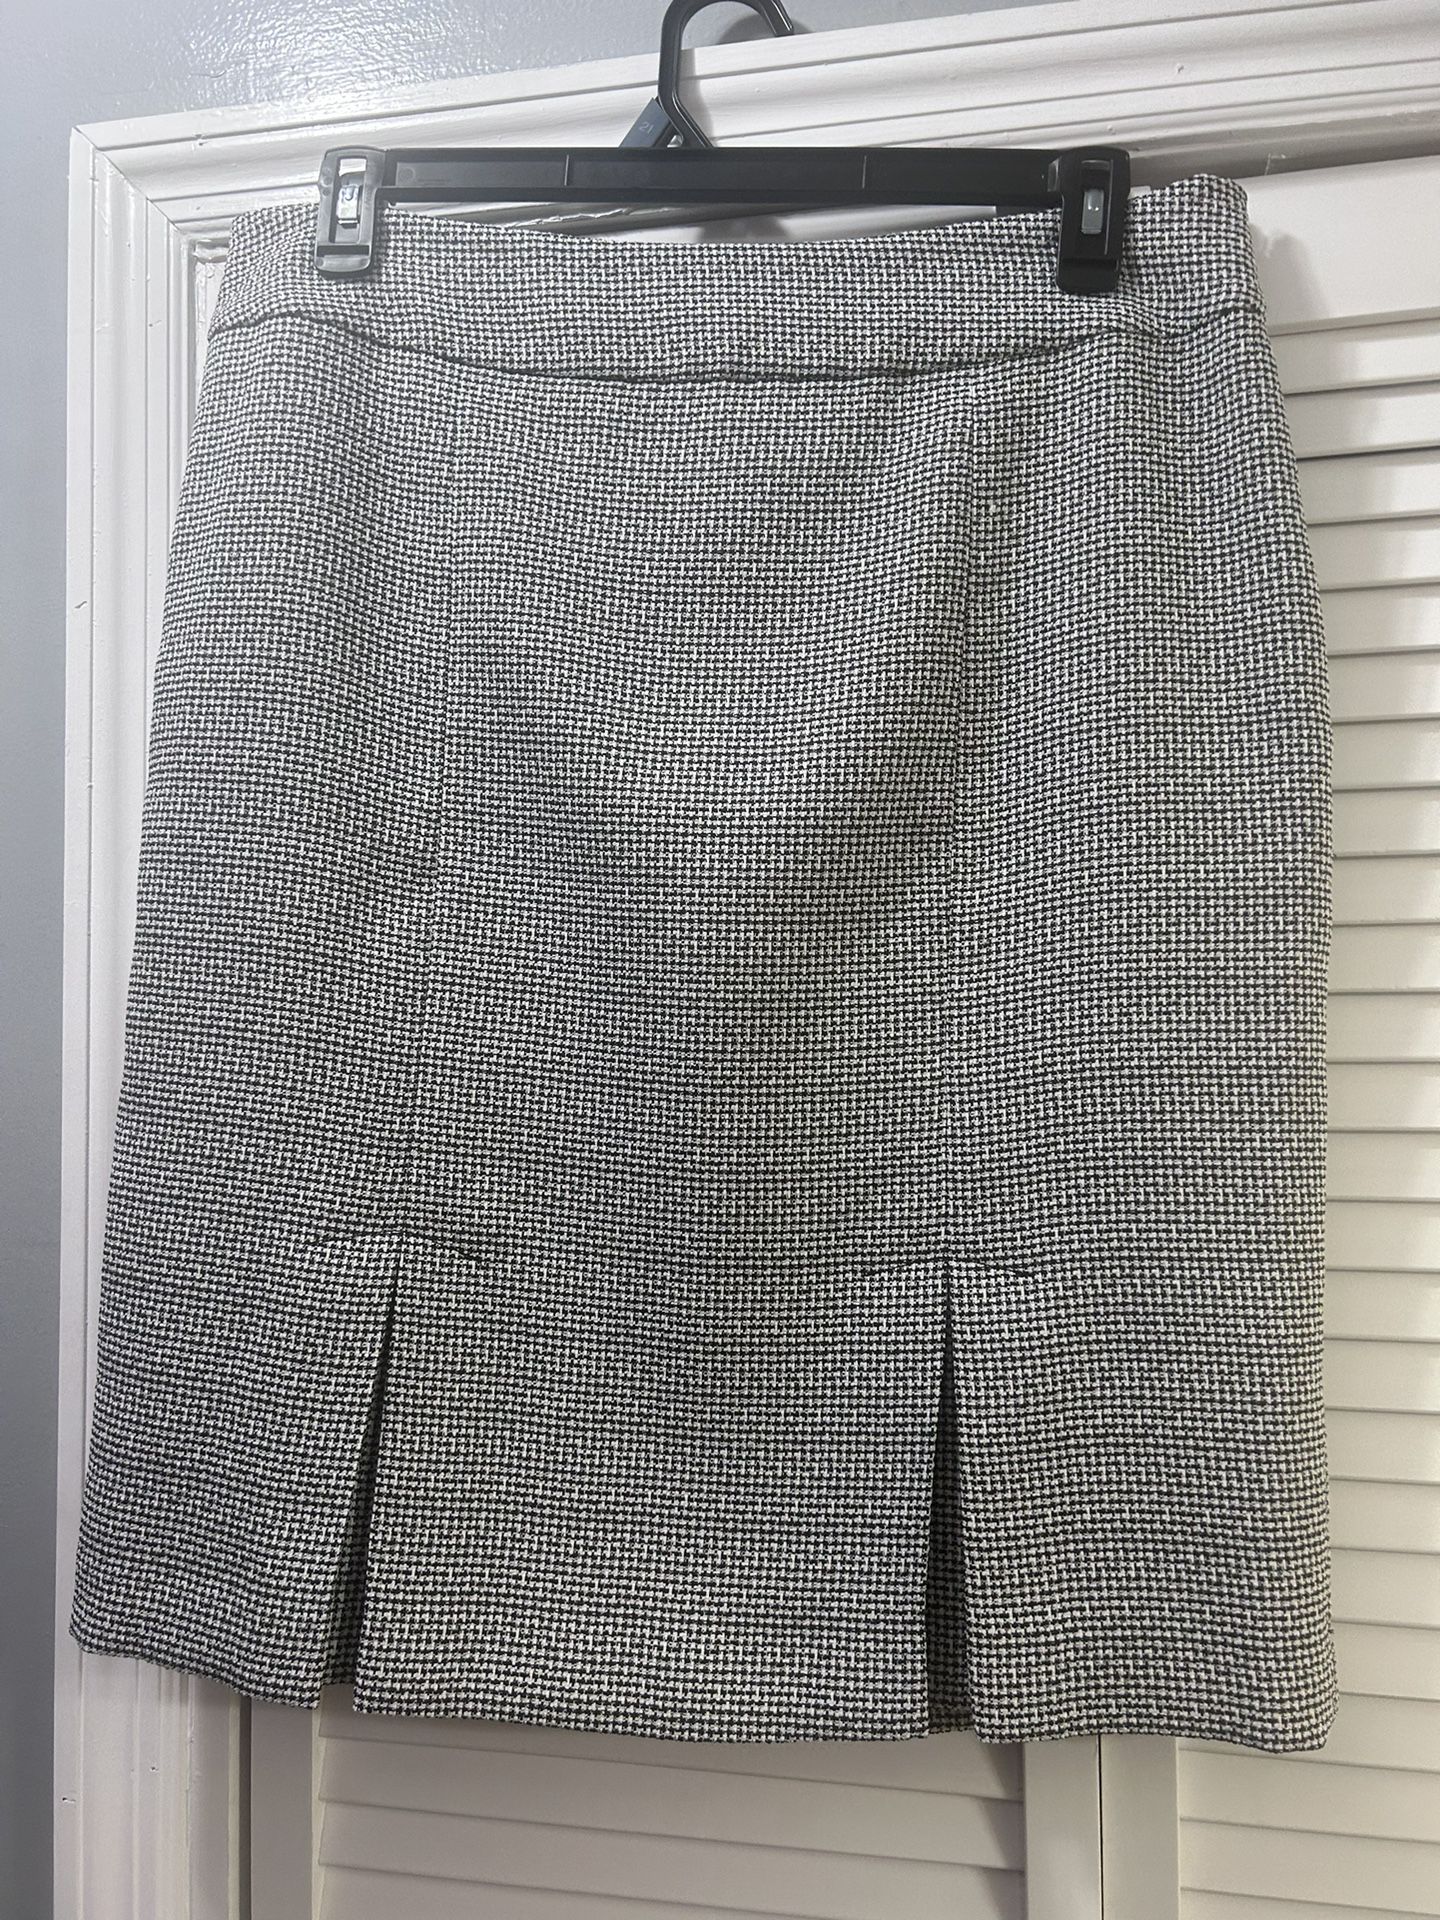 Size 14. Black Checked Skirt. Kasper Brand 